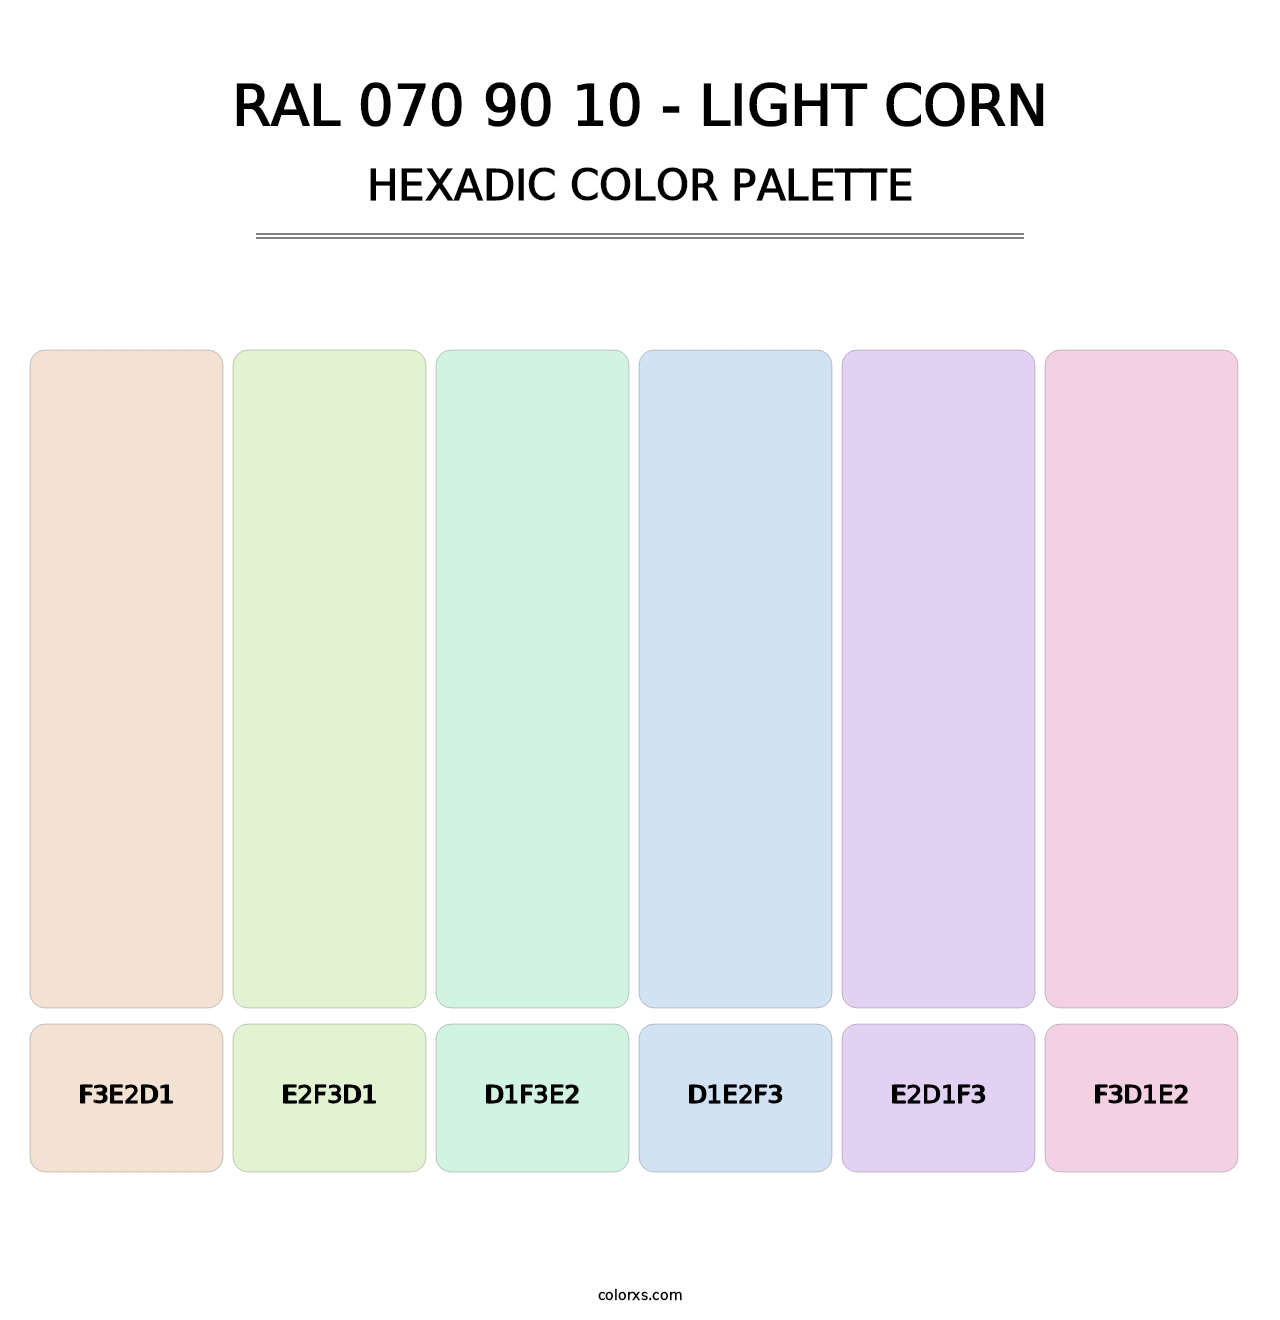 RAL 070 90 10 - Light Corn - Hexadic Color Palette